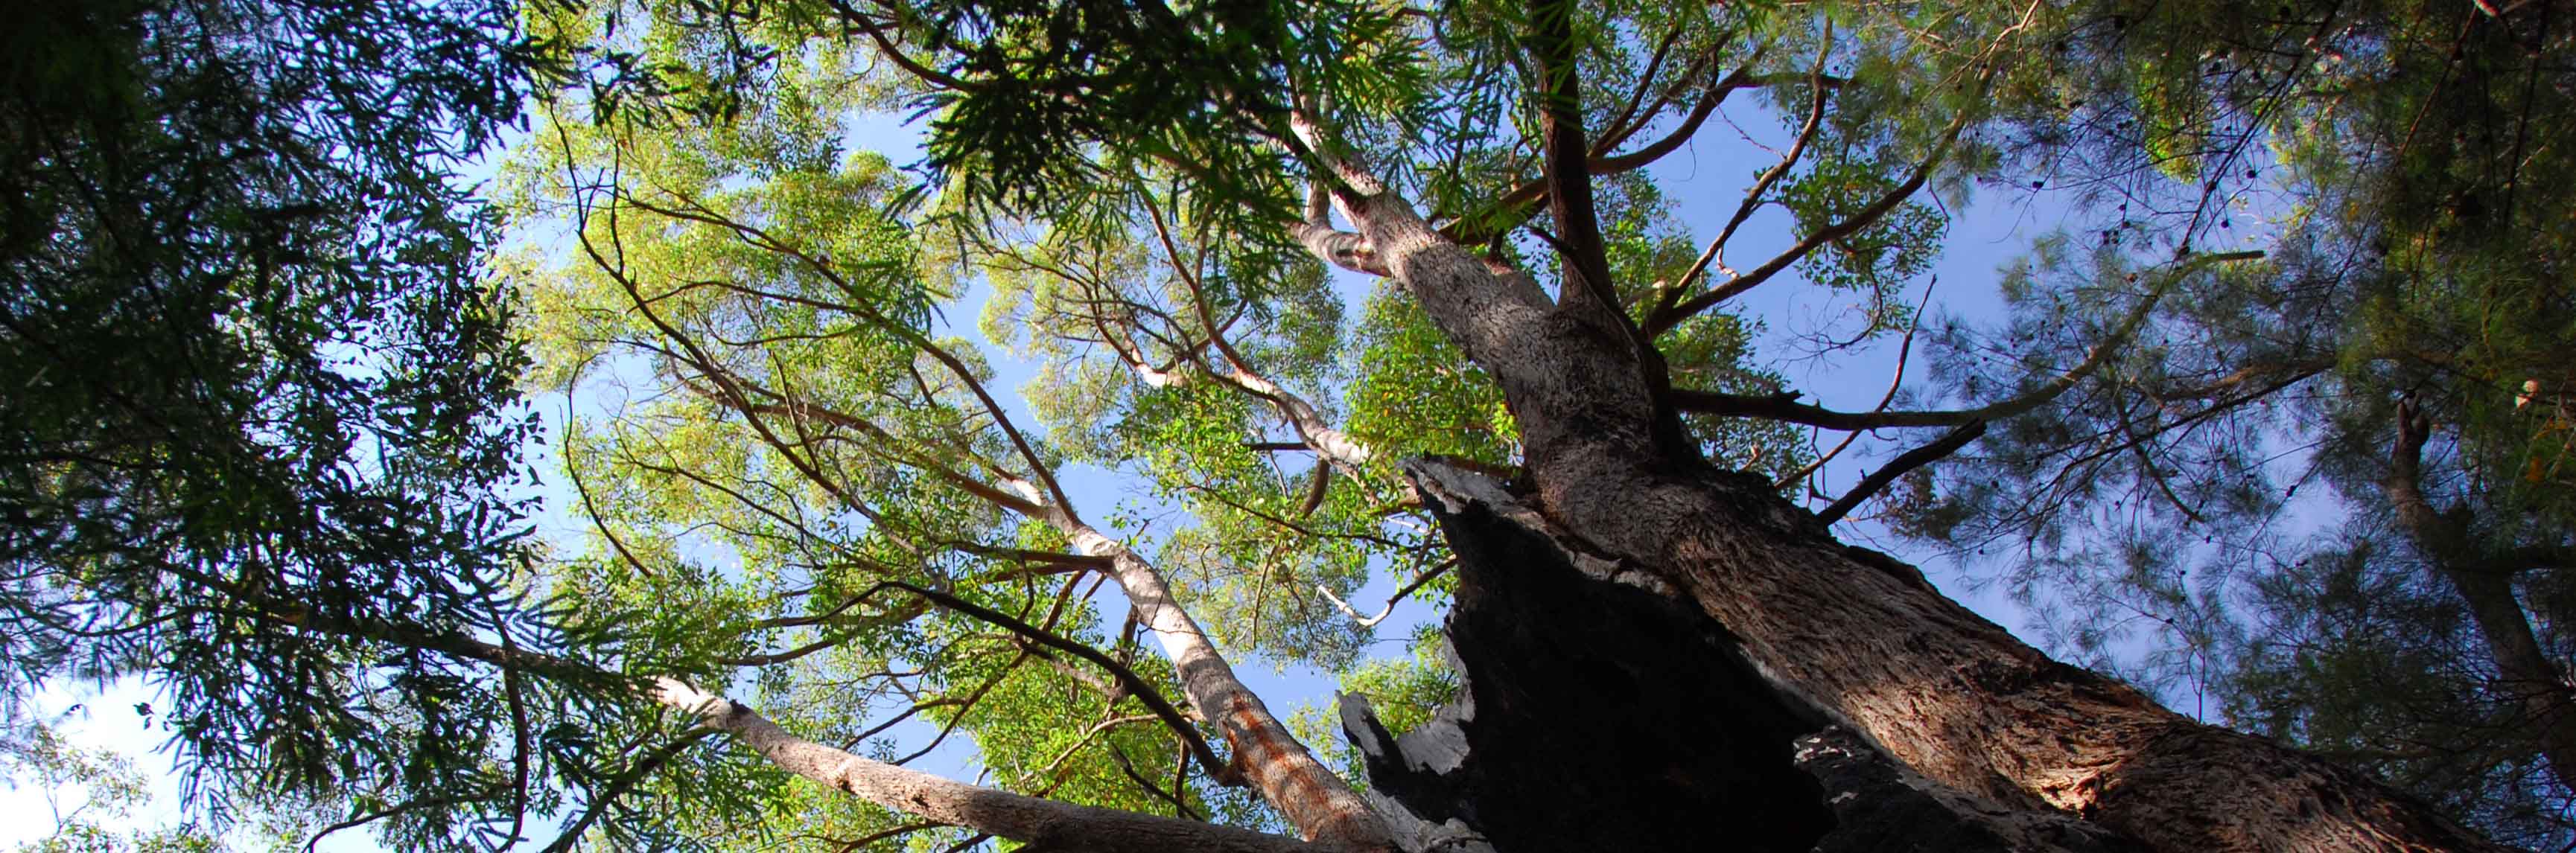 Tasmanië draait bescherming wouden terug